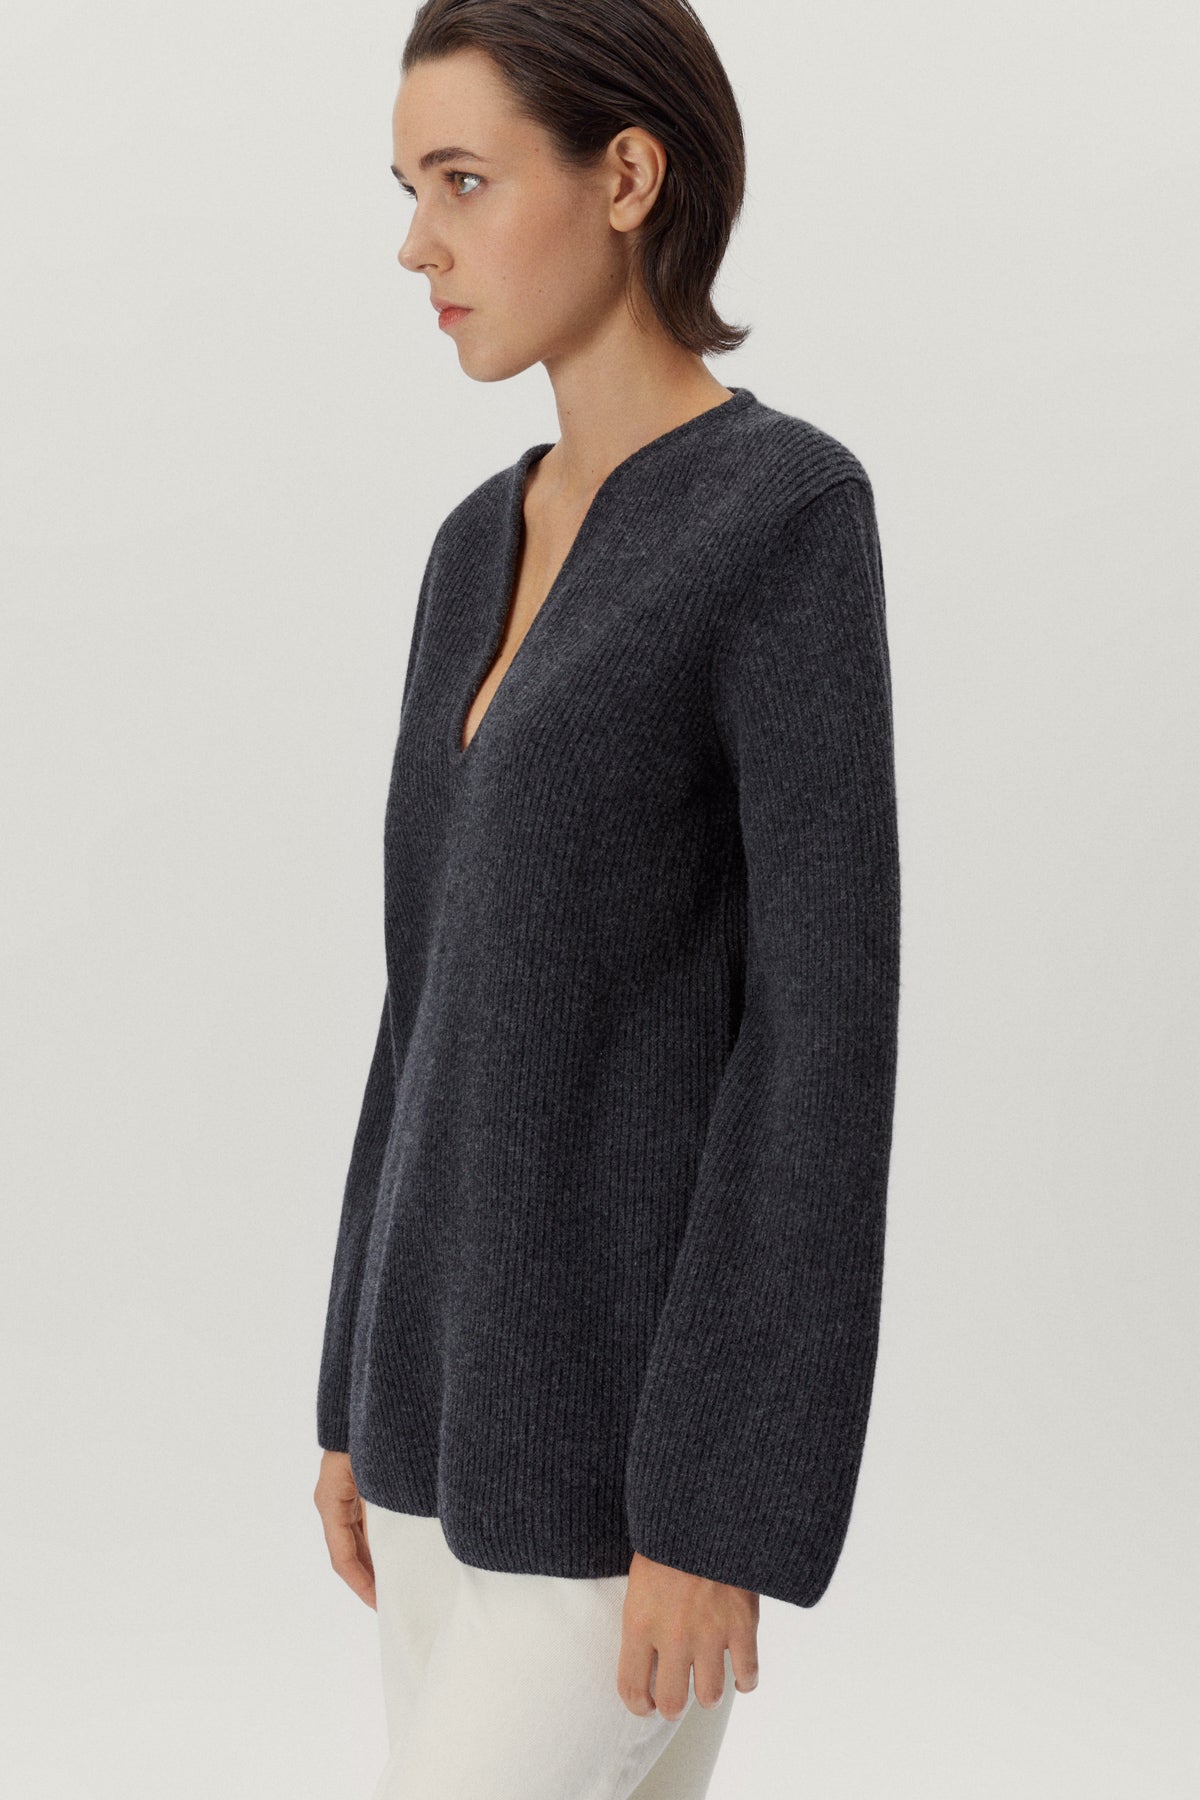 the woolen oversize v neck ash grey